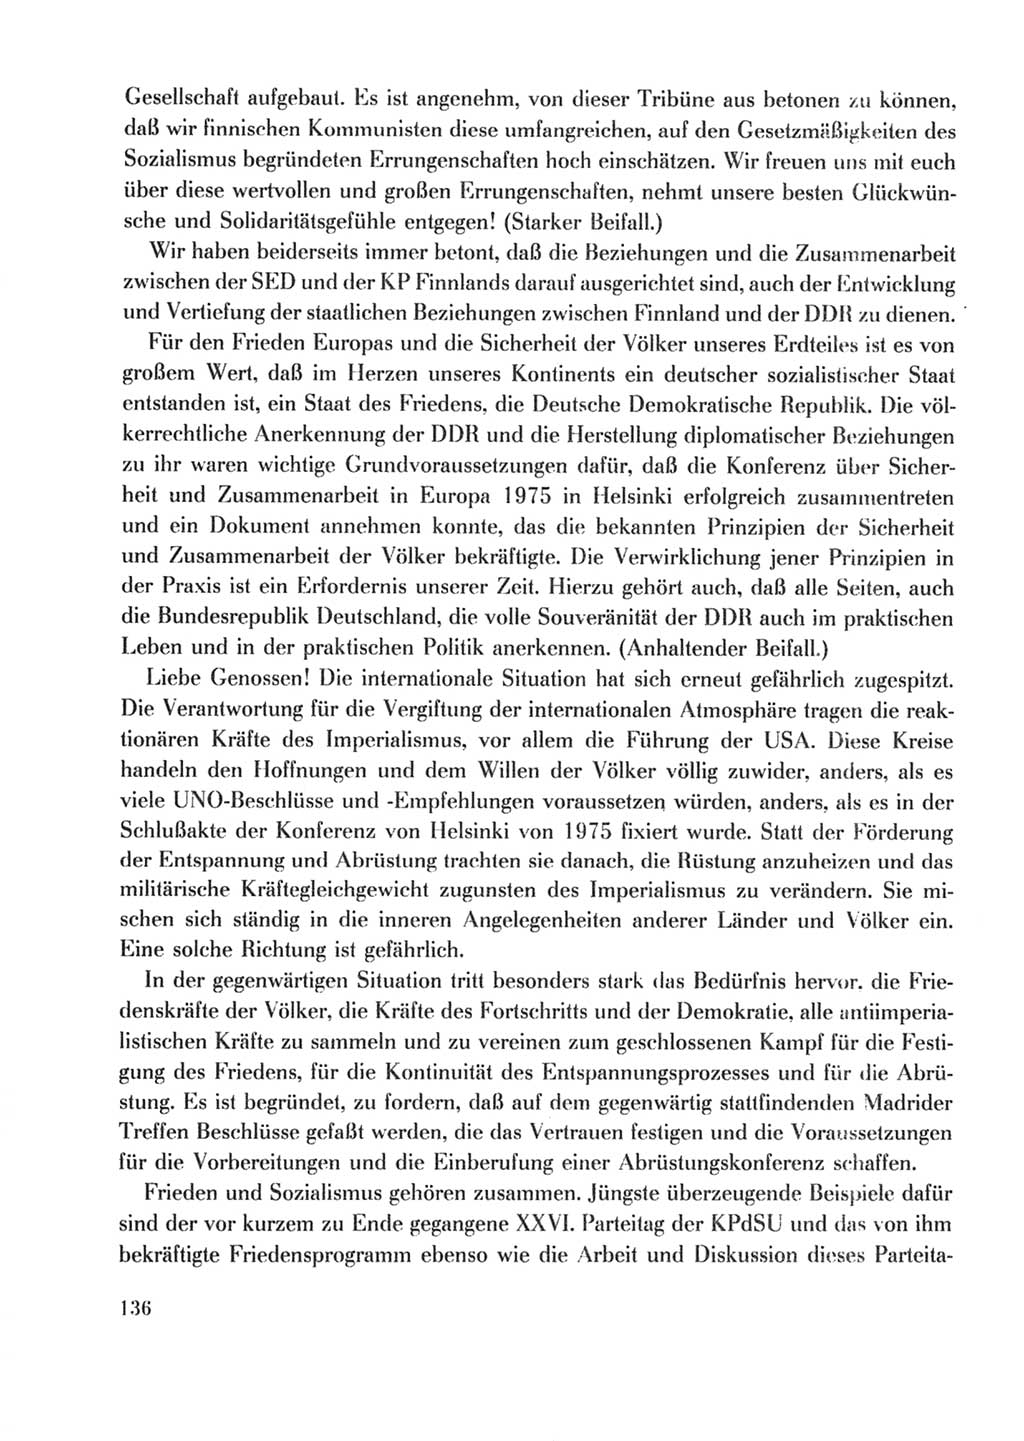 Protokoll der Verhandlungen des Ⅹ. Parteitages der Sozialistischen Einheitspartei Deutschlands (SED) [Deutsche Demokratische Republik (DDR)] 1981, Band 2, Seite 136 (Prot. Verh. Ⅹ. PT SED DDR 1981, Bd. 2, S. 136)